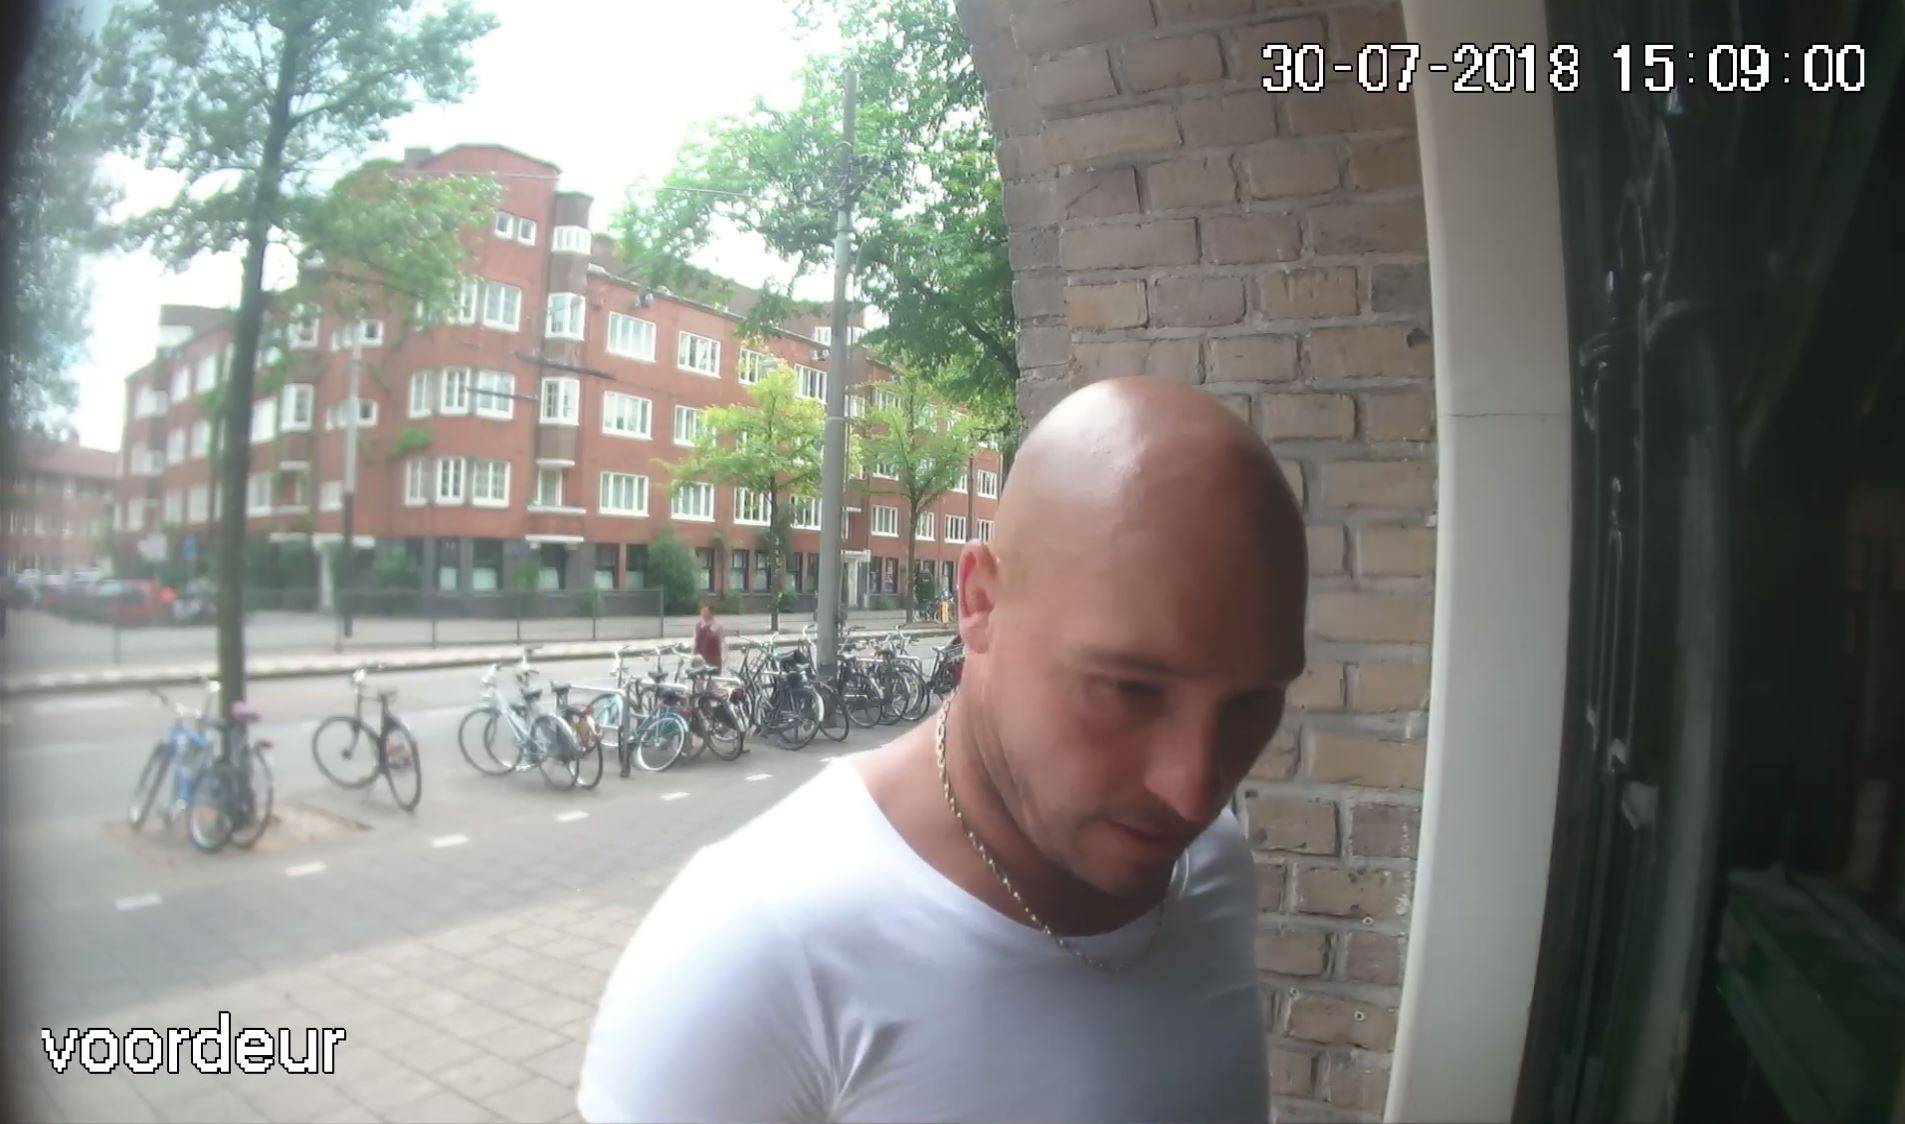 Tko je nasmiješeni ubojica koji je ubio Hrvata u Amsterdamu?